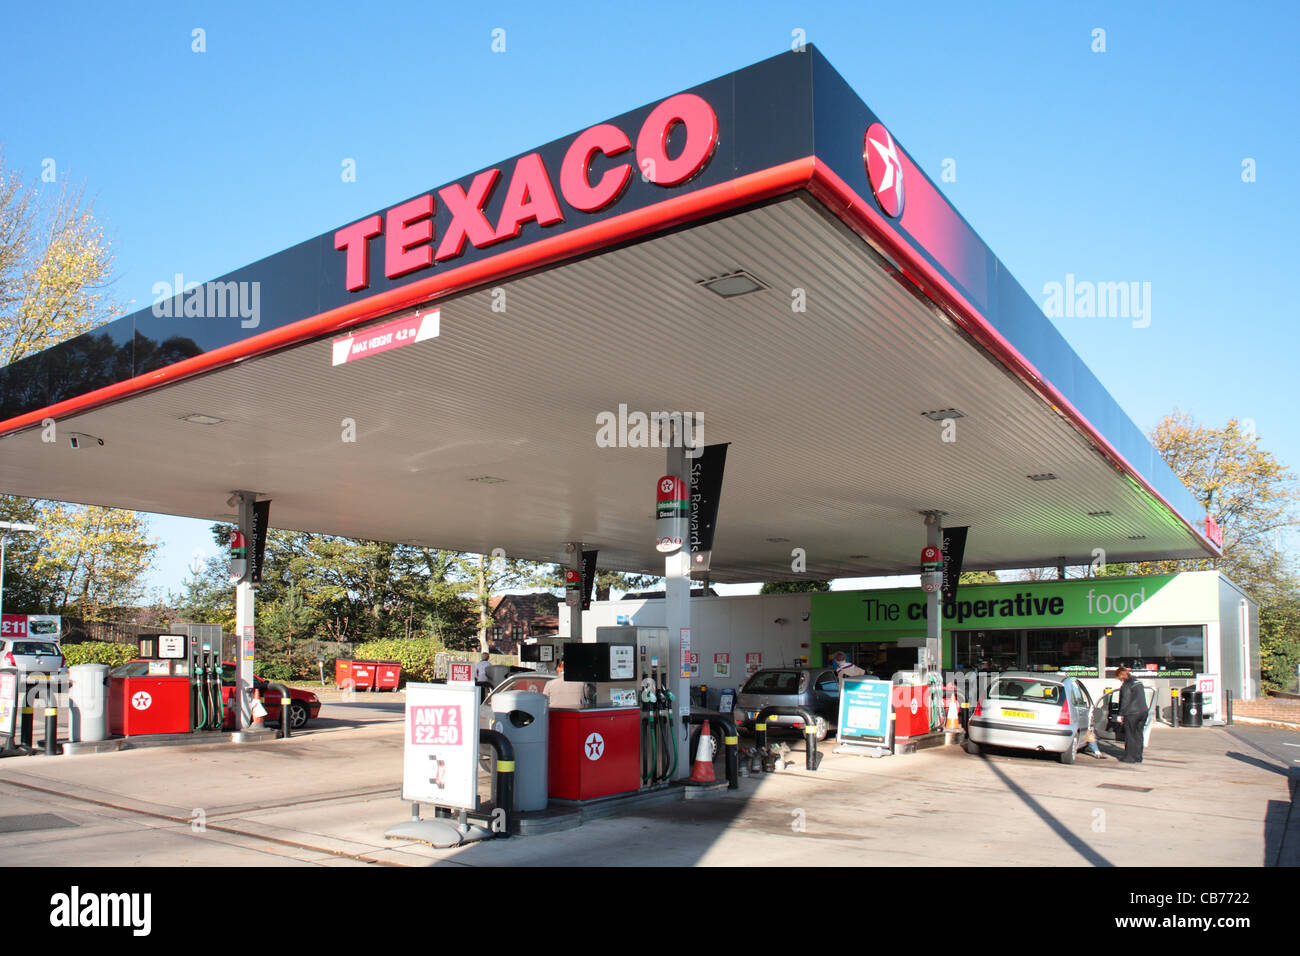 Texaco petrol station Stock Photo